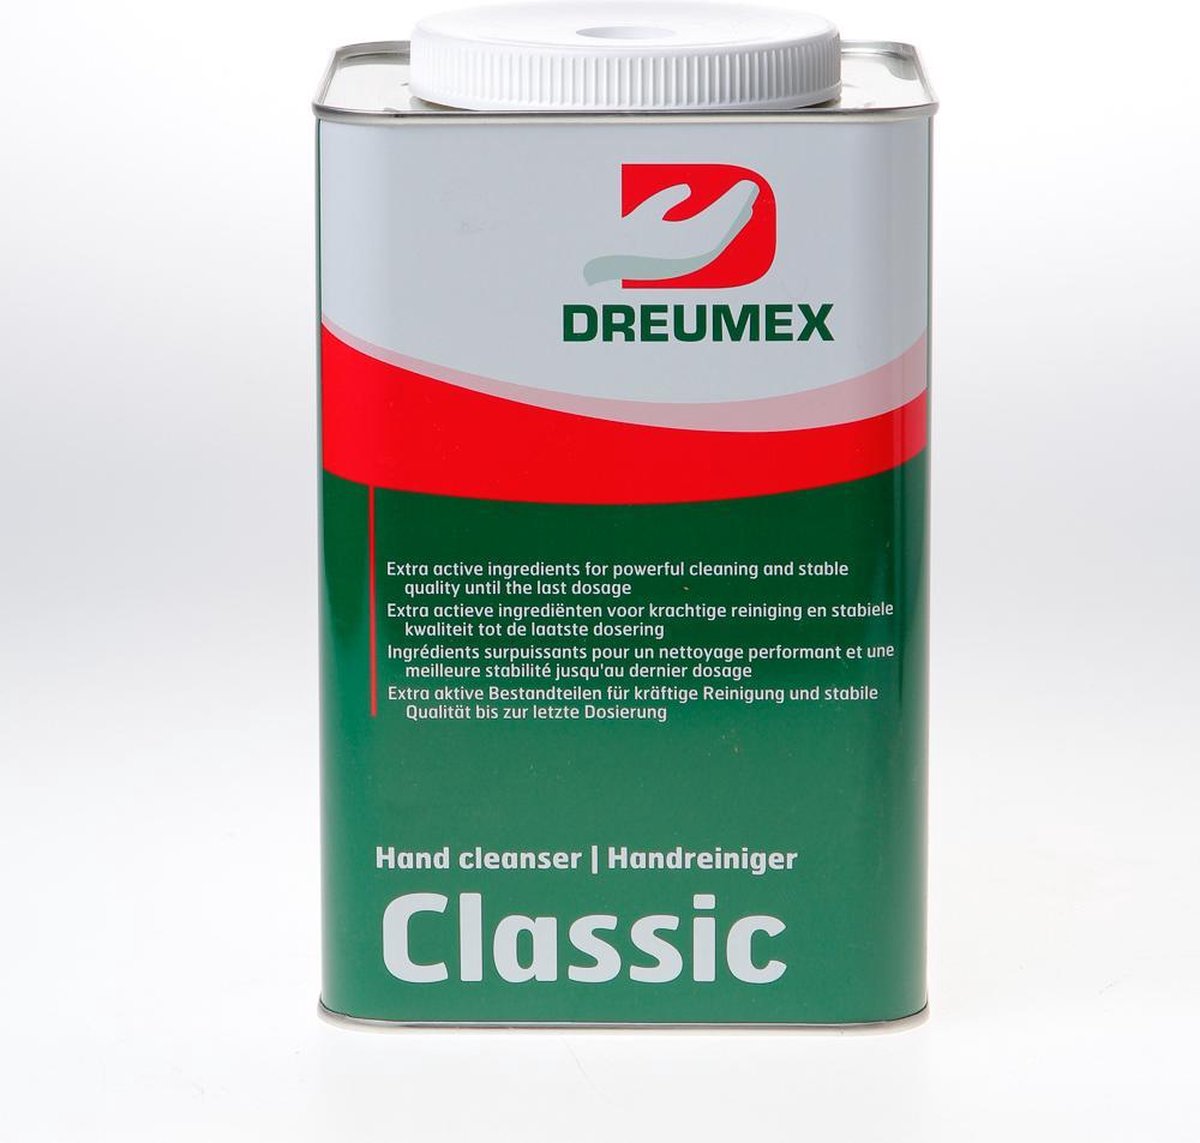 Dreumex Handreiniger gel rood classic 4.5 liter